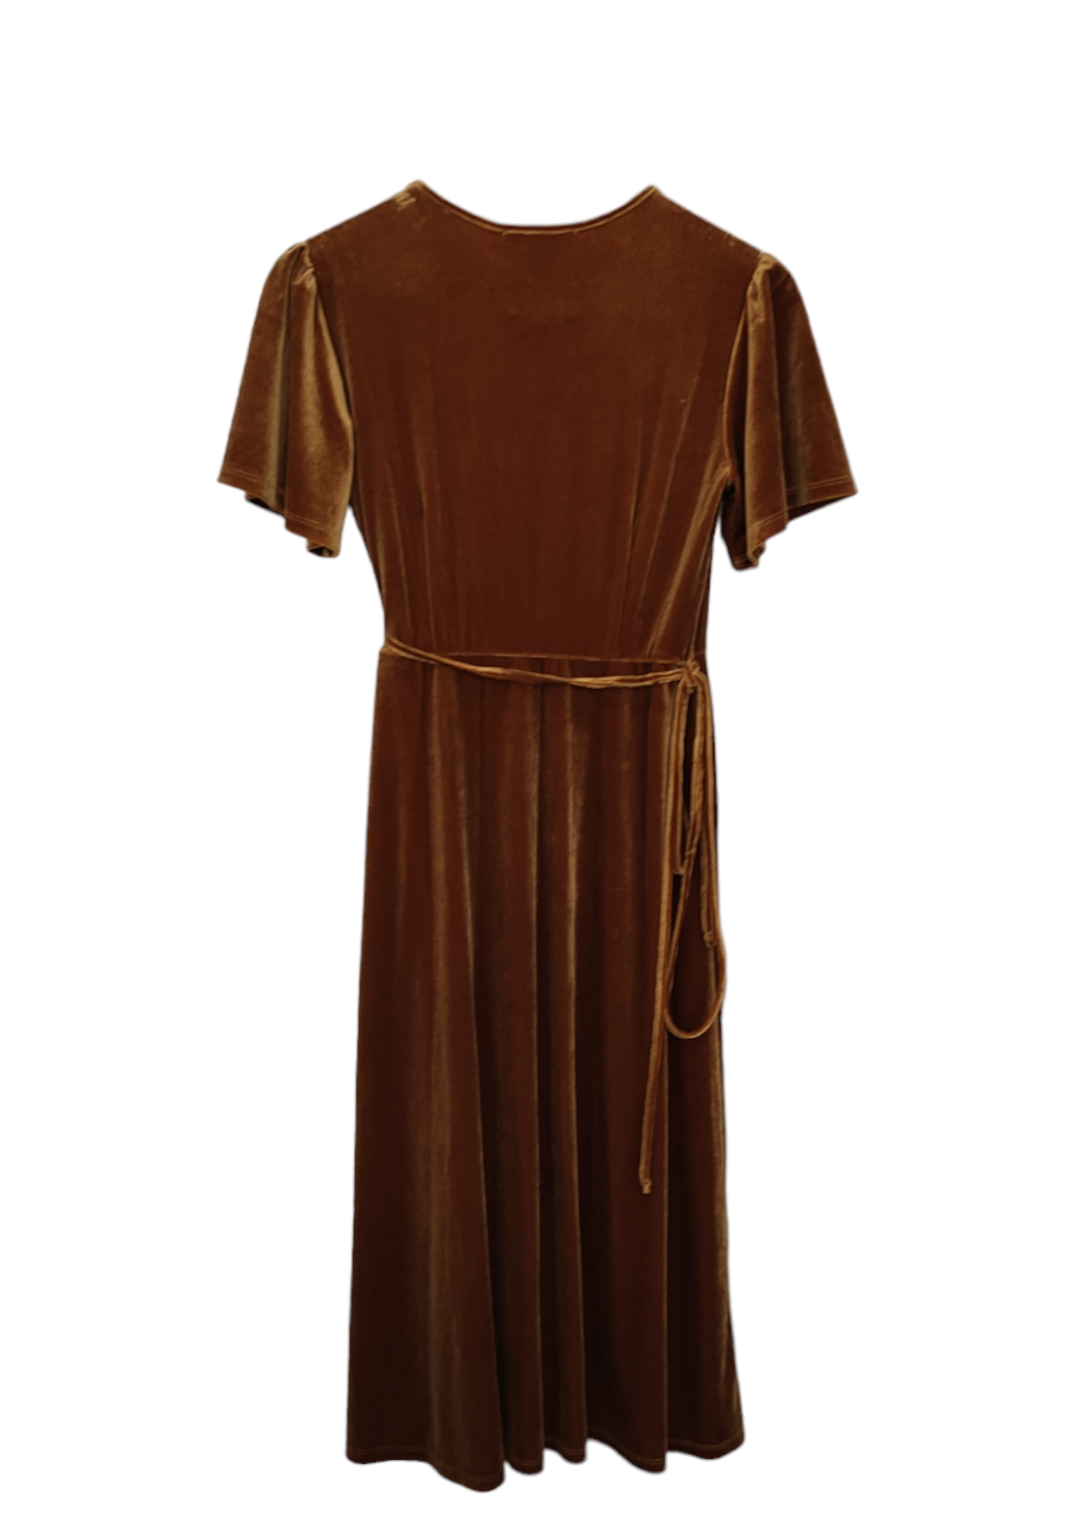 Βελούδινο, Κοντομάνικο Φόρεμα FOREVER 21 σε Καφέ-Χρυσό Χρώμα (Small)